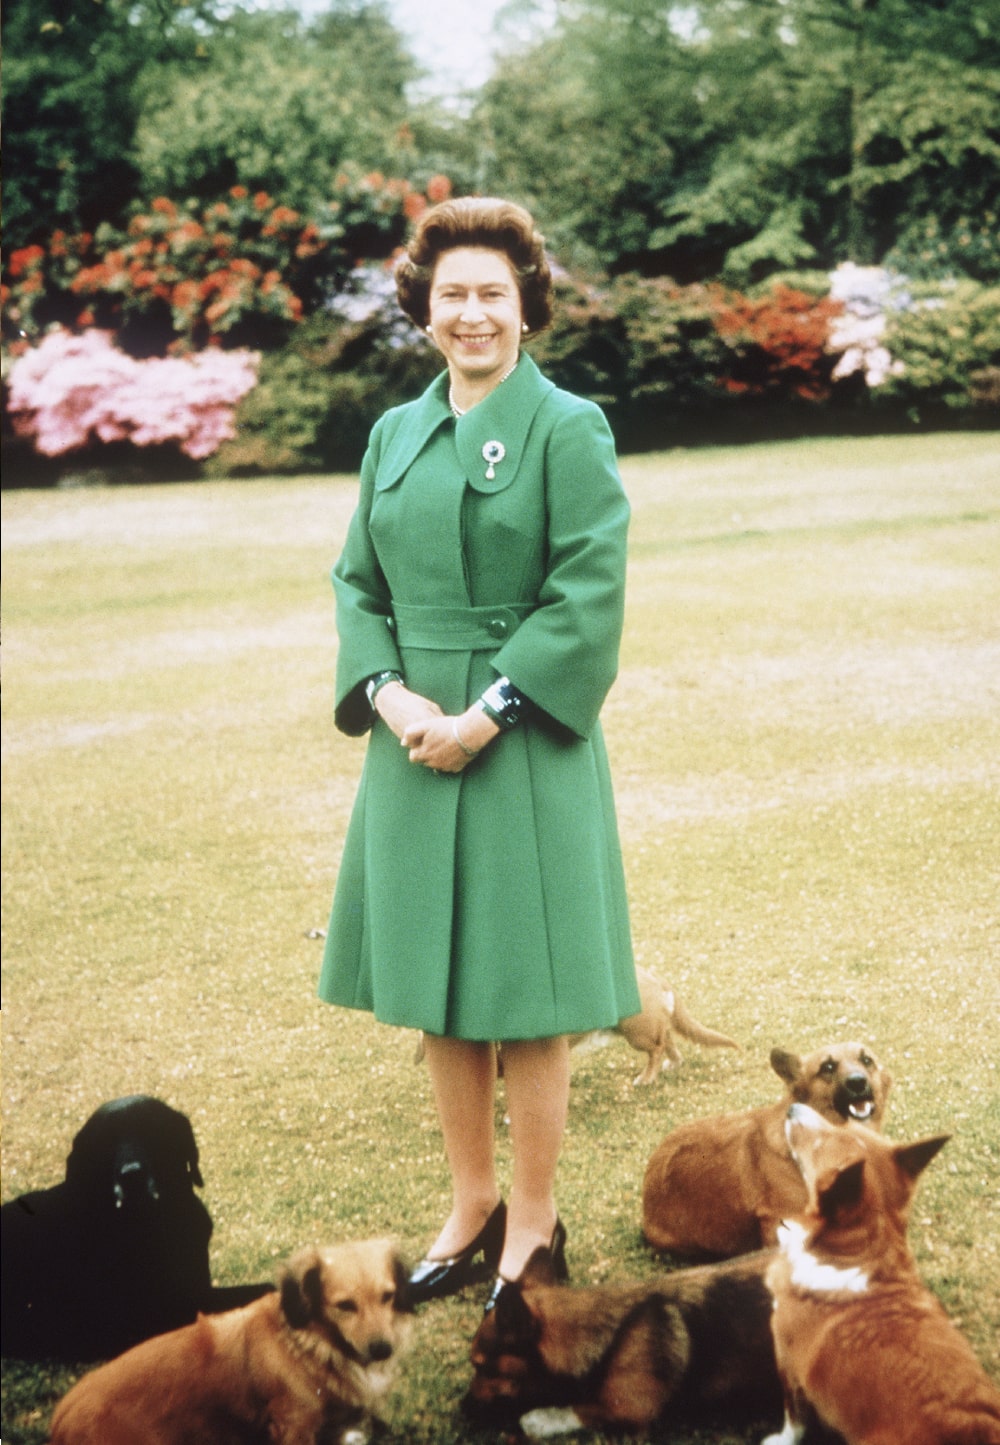 Queen Elizabeth dogs